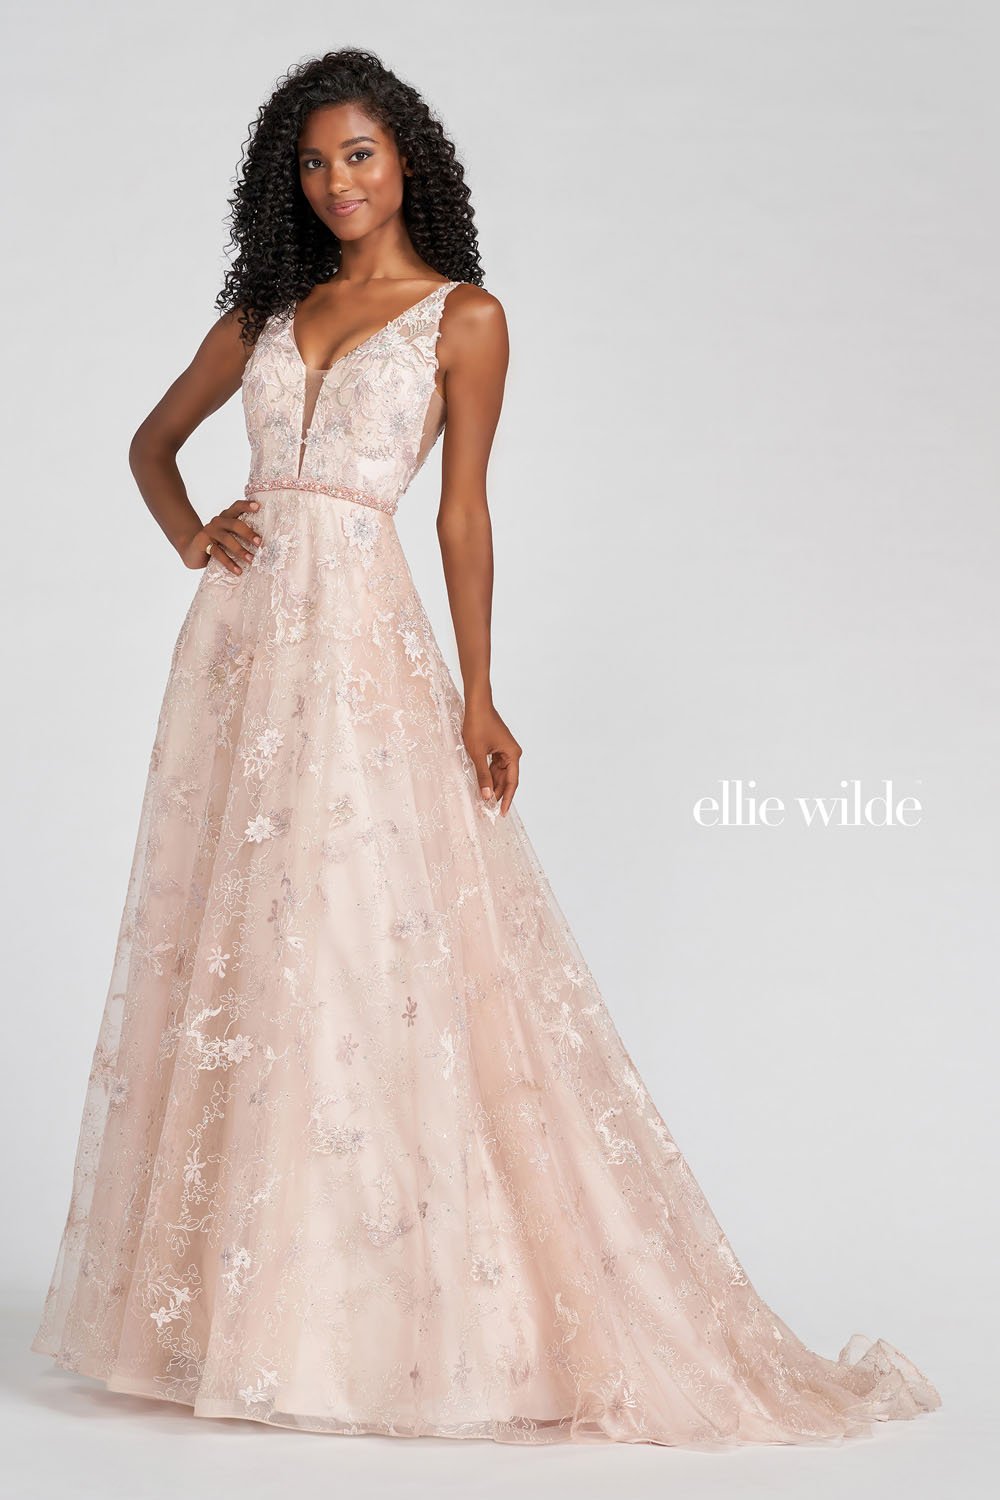 Ellie Wilde Dusty Rose Multi EW122114 Prom Dress Image.  Dusty Rose Multi formal dress.